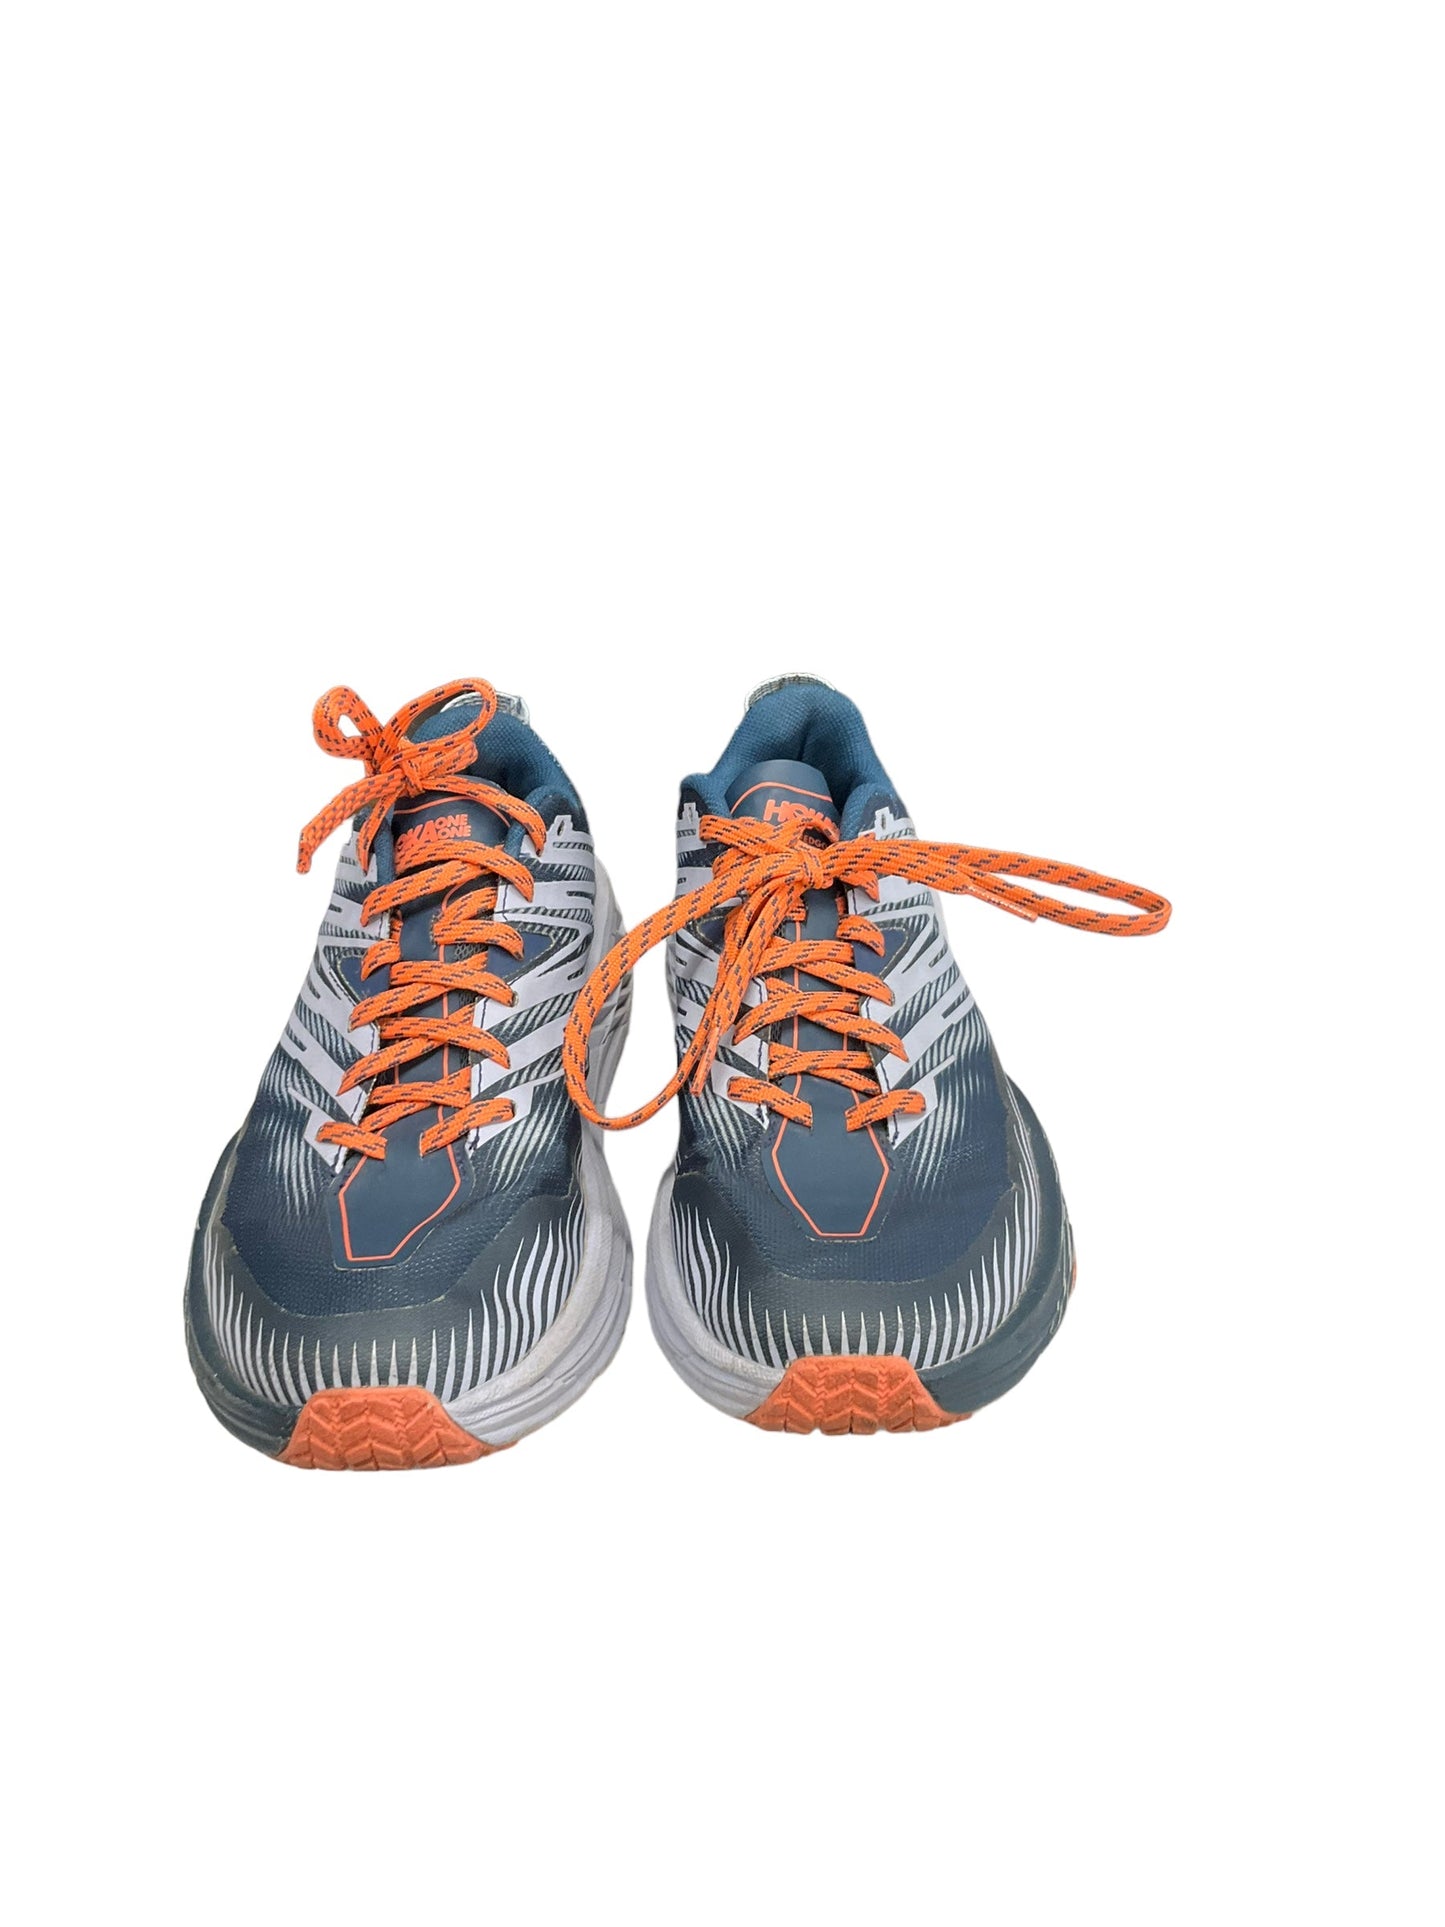 Blue Shoes Athletic Hoka, Size 8